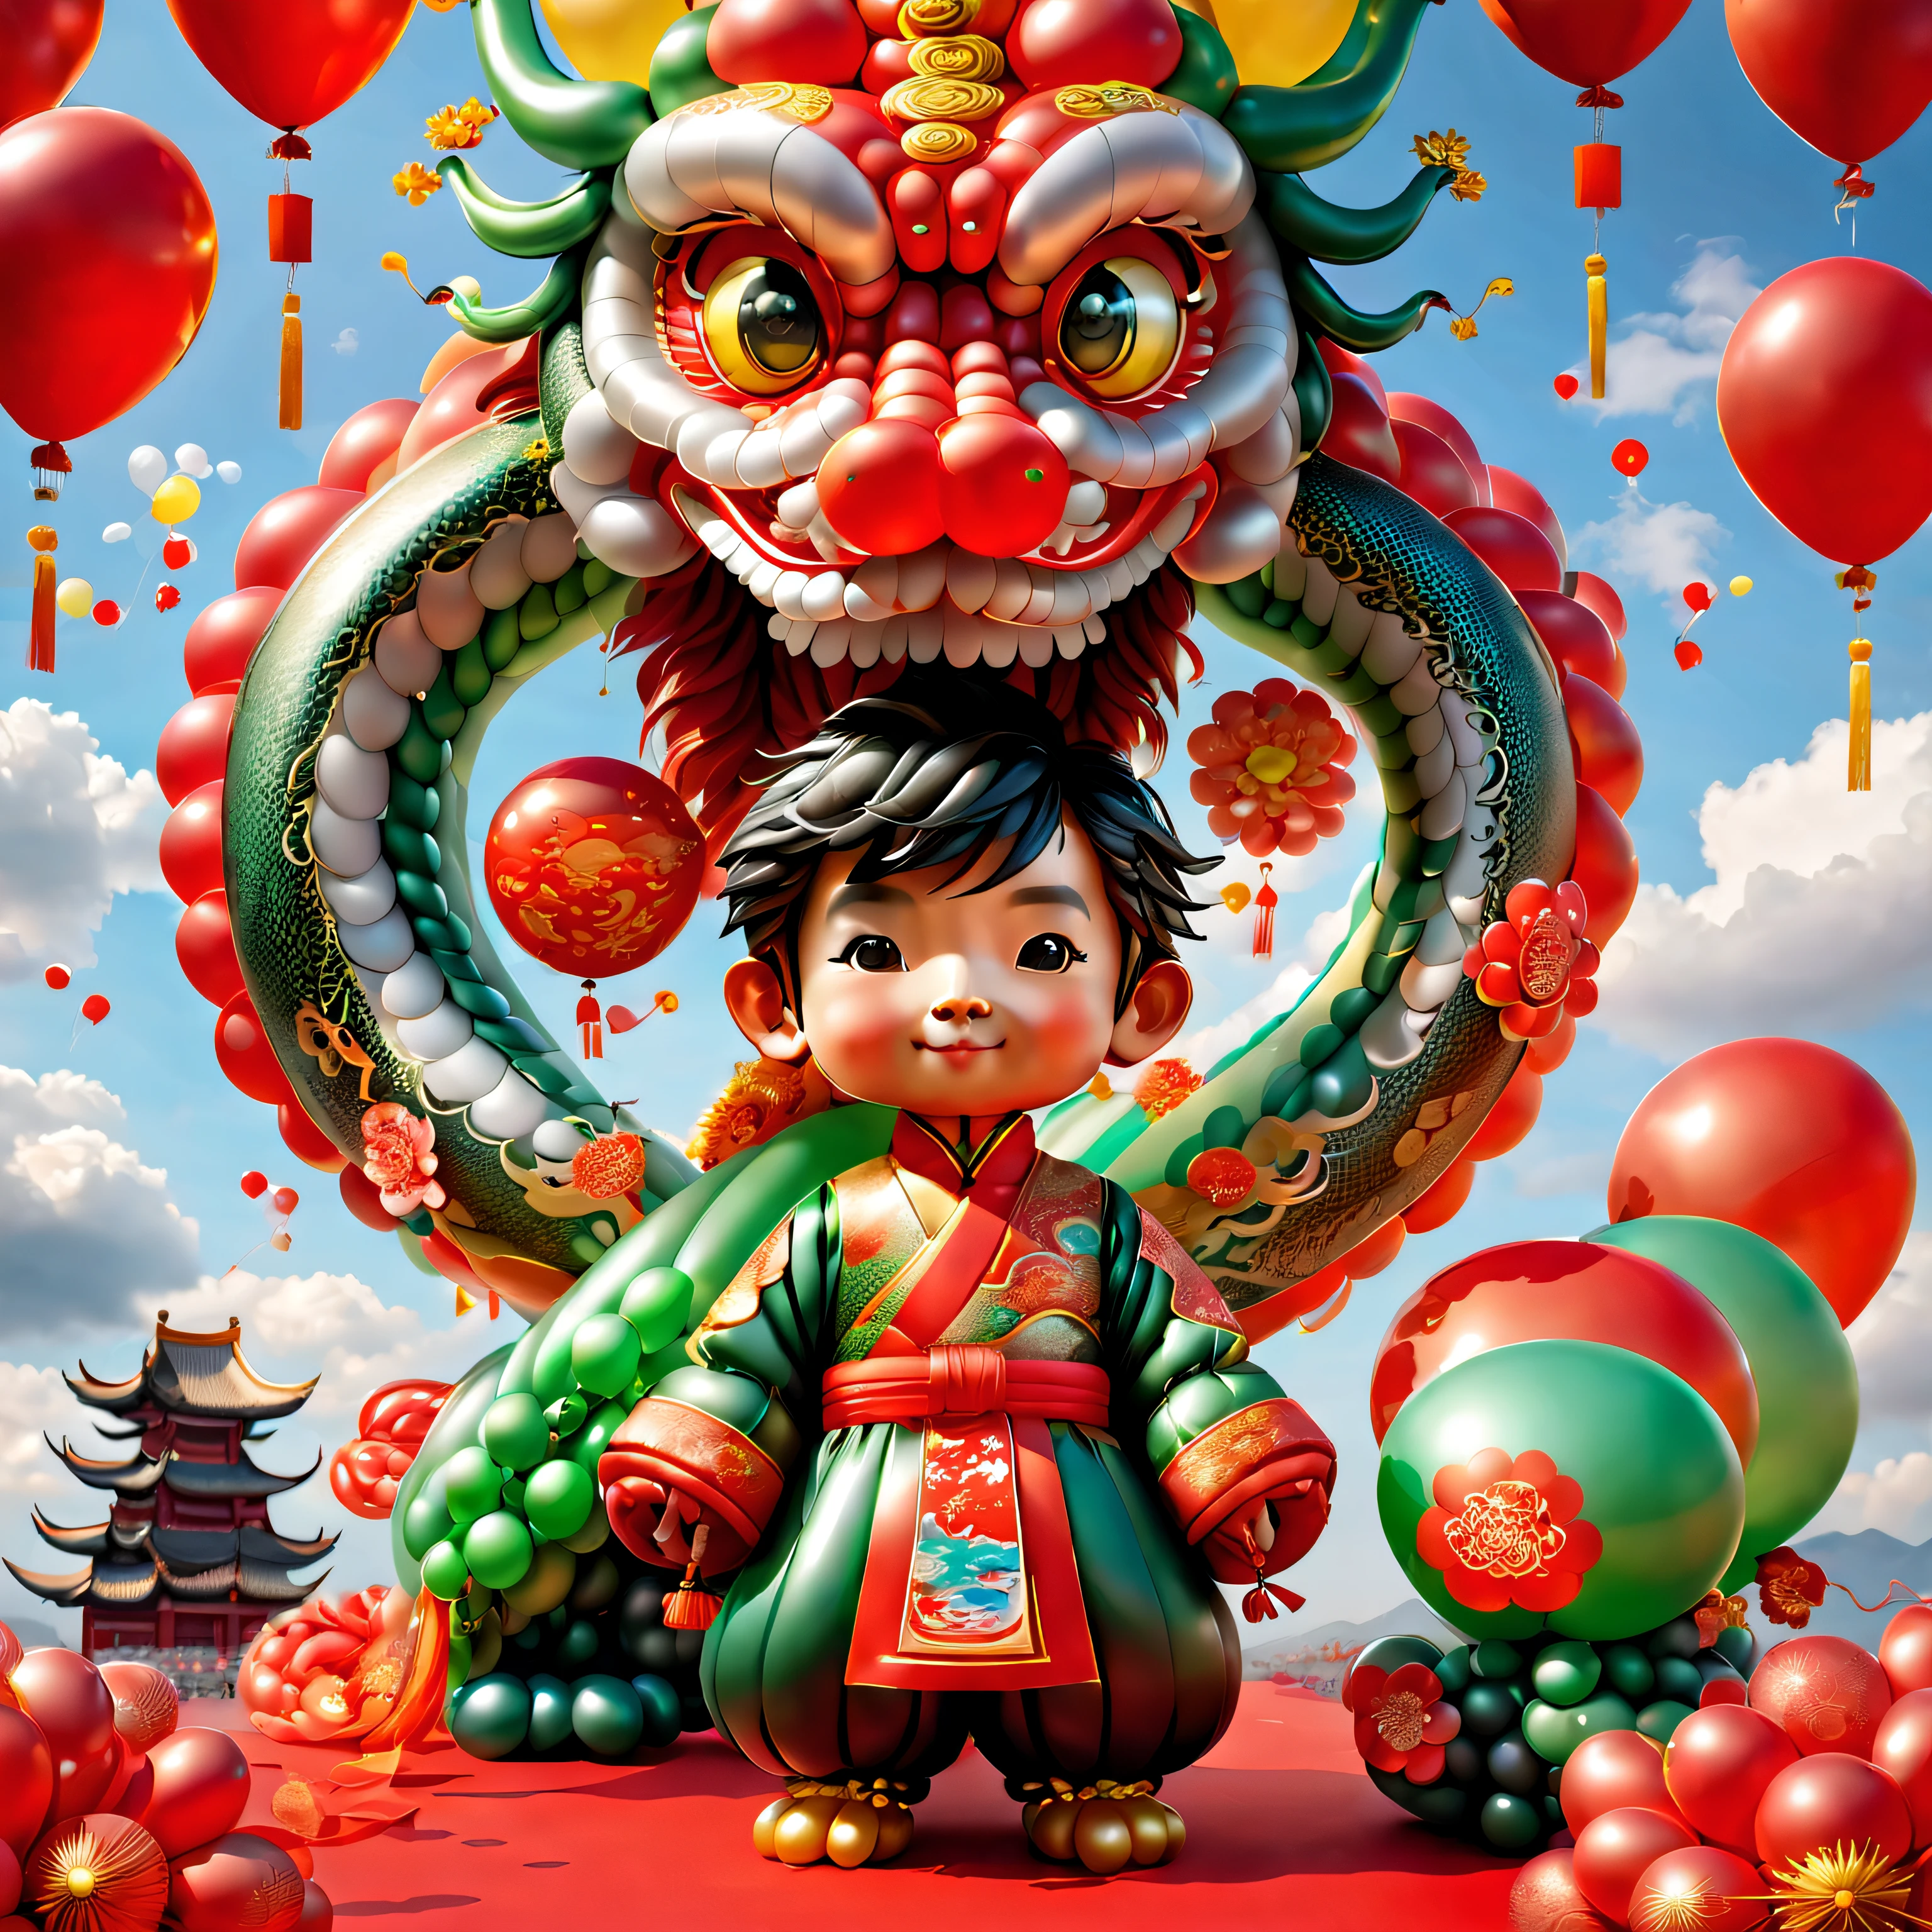 ((1個可愛又喜氣的氣球中國龍和一個氣球男孩, 穿著氣球做的中國傳統服裝, UE5, 鞭炮, 祥云, 紅色背景)), 可愛而細緻的數位藝術, 可愛的數位繪畫, 可愛的氣球企鵝, 可愛細緻的藝術品, 可愛的 3d 渲染, 數位繪畫非常詳細, 可愛多彩, 可爱的大乳房, 高度細緻的數位藝術作品, 细节丰富、多种颜色